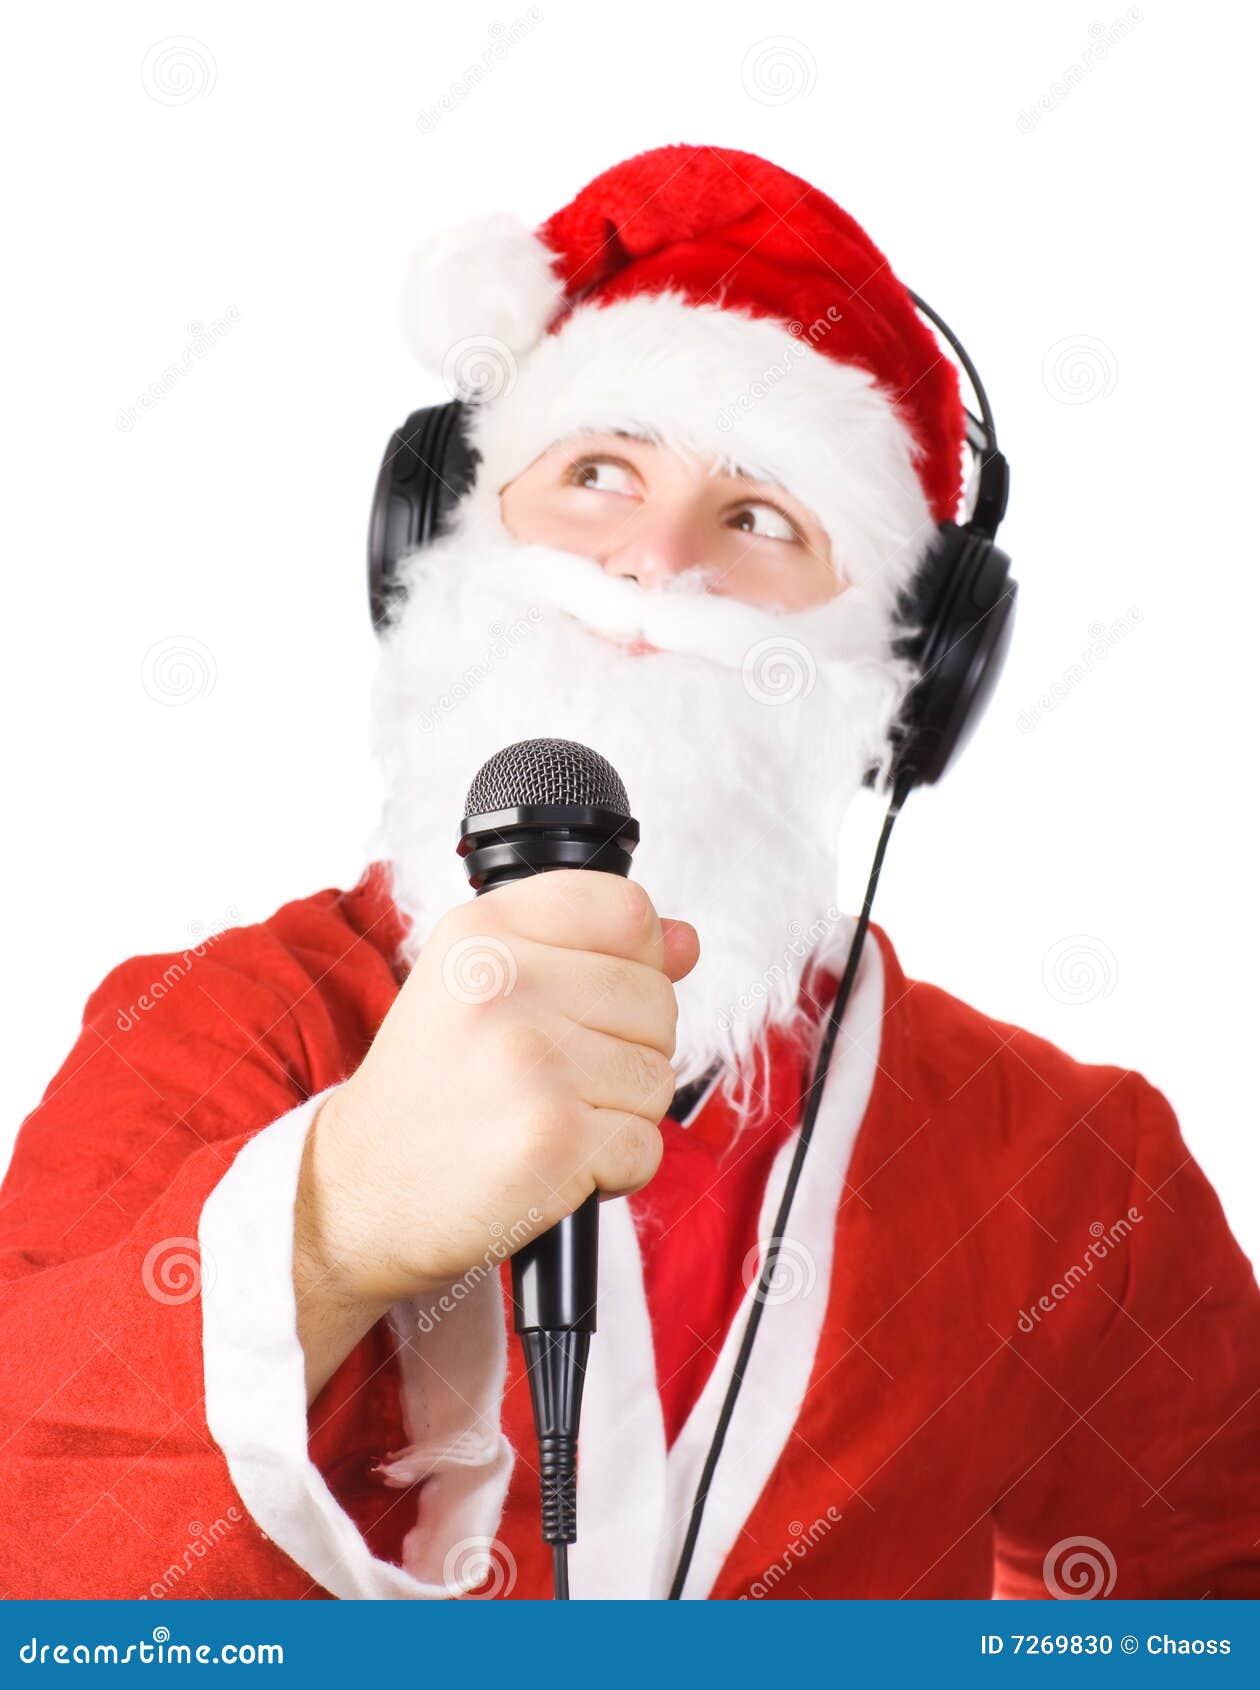 Babbo Natale Canzone.Il Babbo Natale Che Canta Una Canzone Fotografia Stock Immagine Di Uomo Isolato 7269830